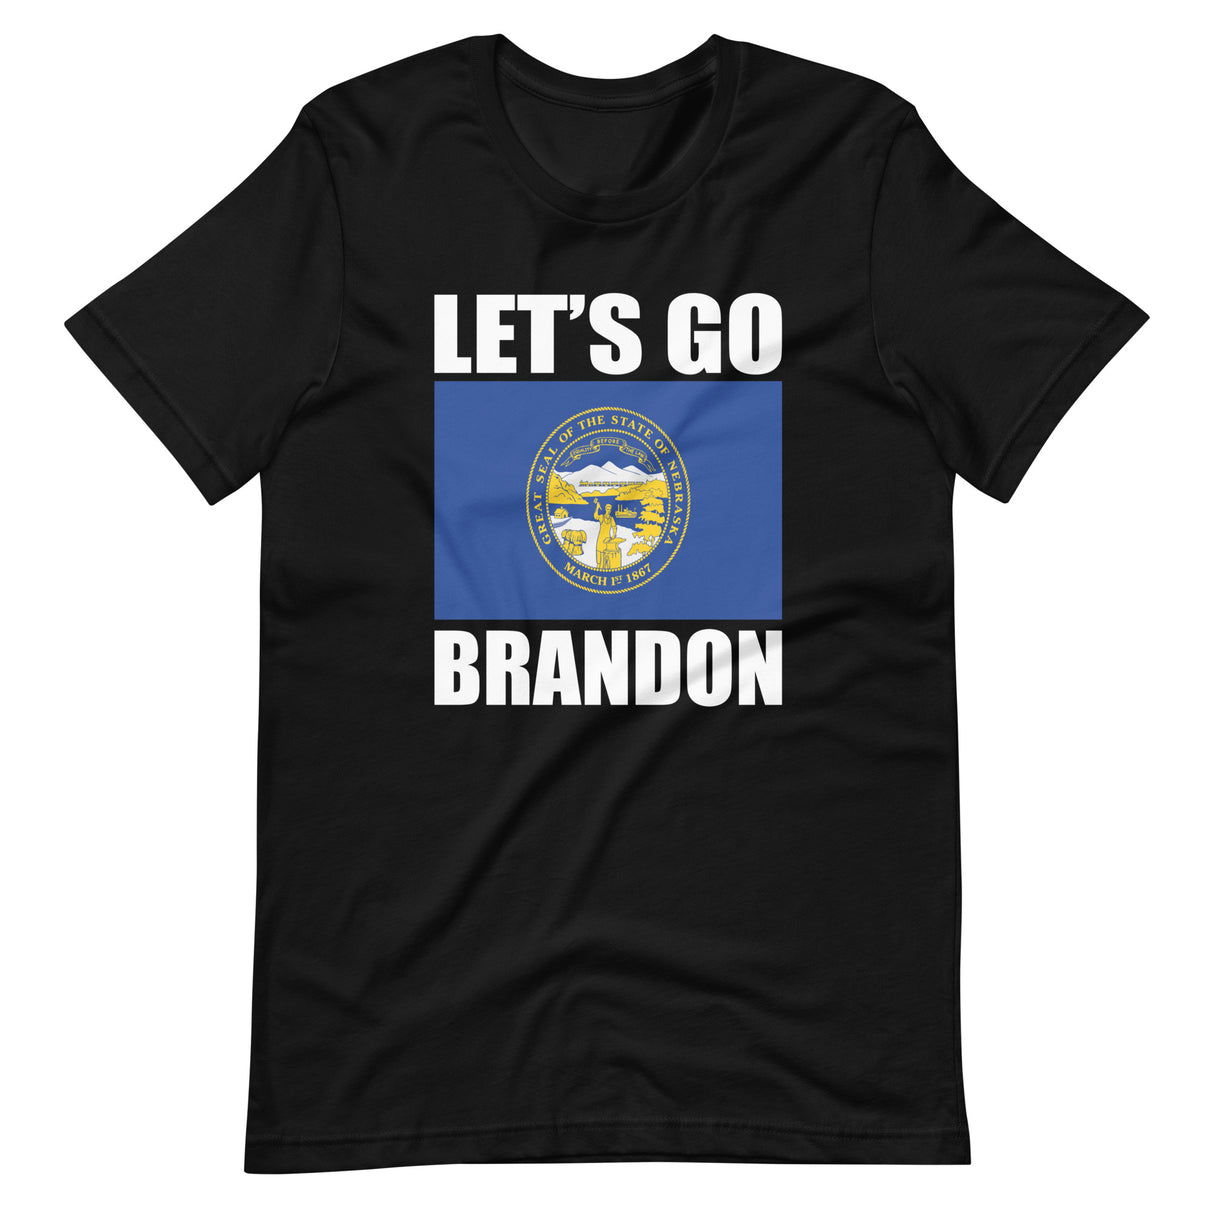 Let's Go Brandon Short Sleeve Shirt